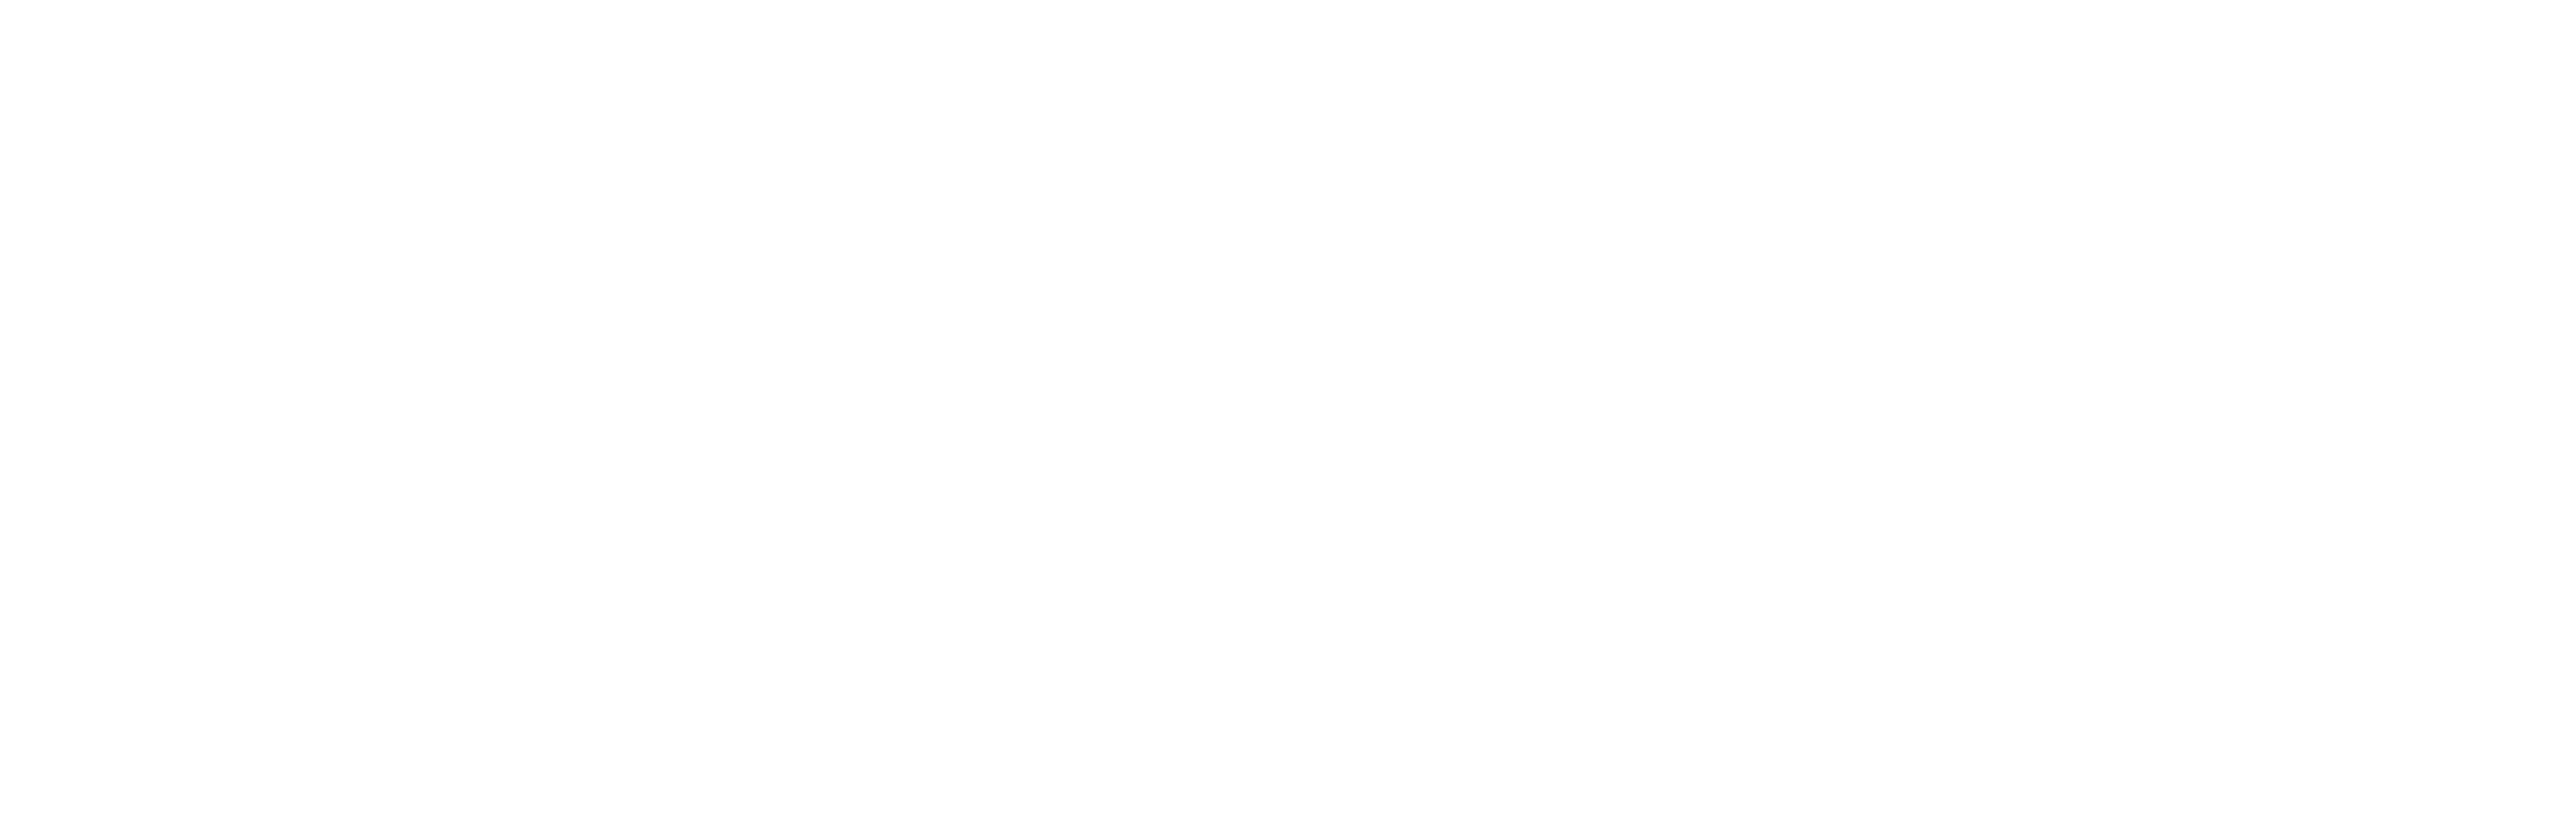 TwinStrand Biosciences